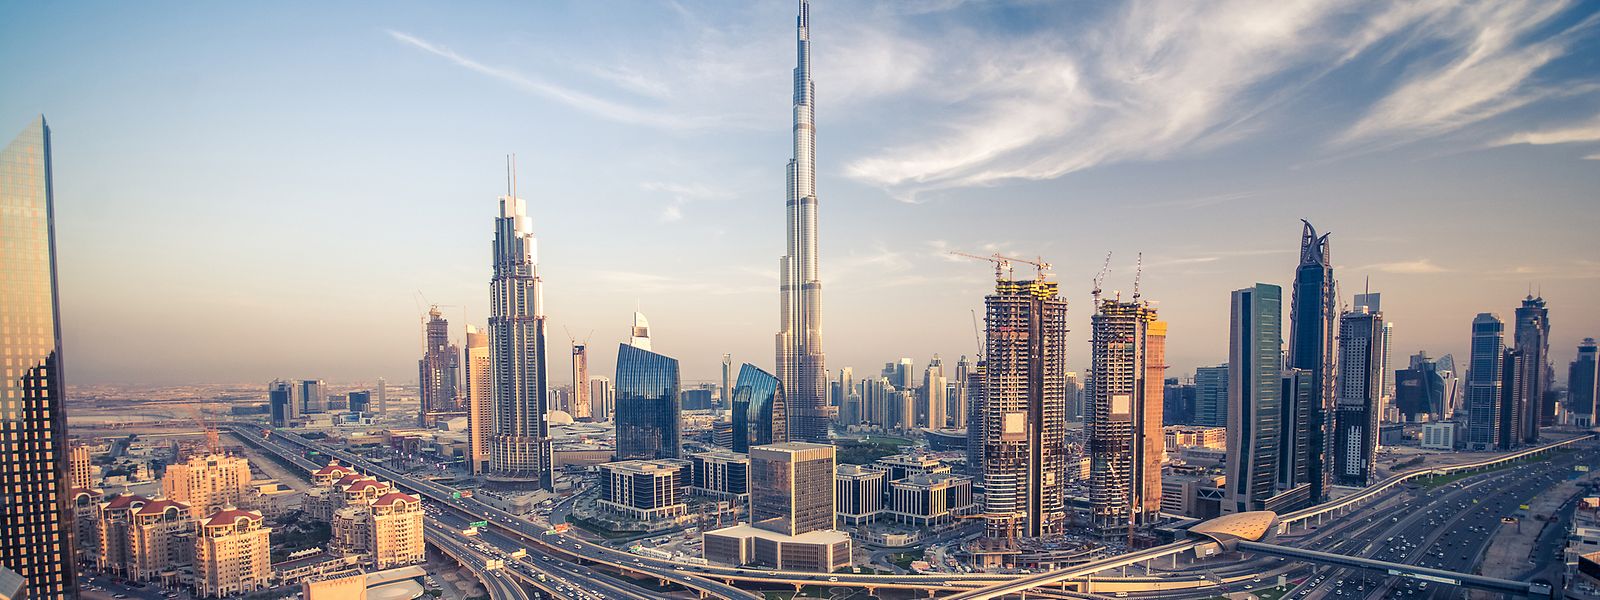 Groß, hektisch und luxuriös: Dubai ist die wirtschaftliche Metropole der Vereinigten Arabischen Emirate.